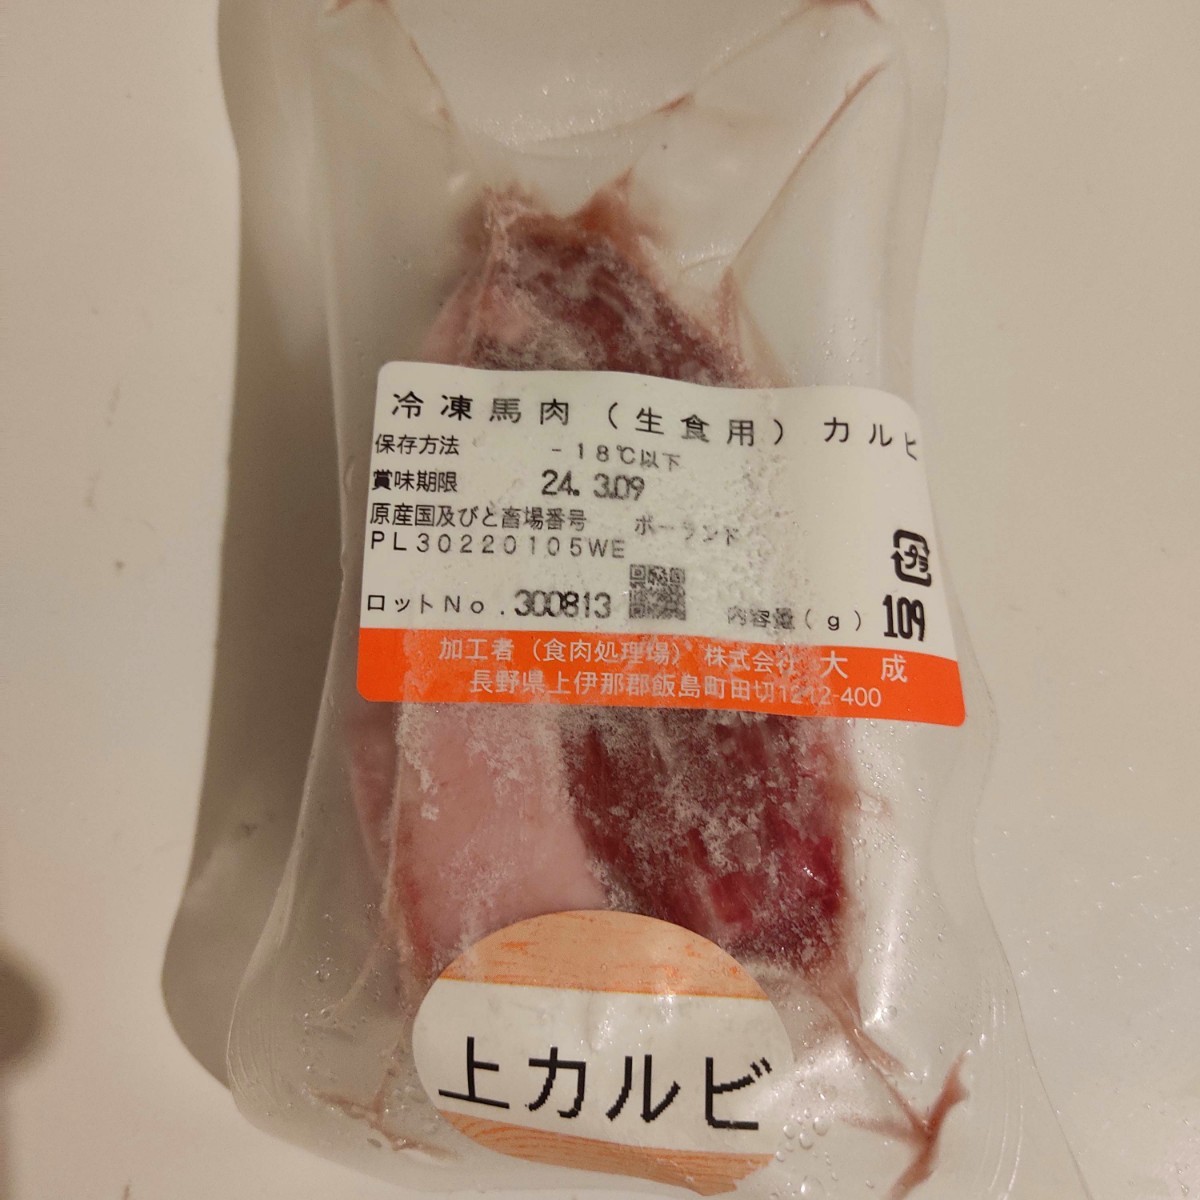 * басаси 1kg сырой еда для натуральный средний ...( сверху AS) нестандартный товар есть перевод большой . бренд иностранного производства рефрижератор товар стоимость доставки Kanto 800 иен ~